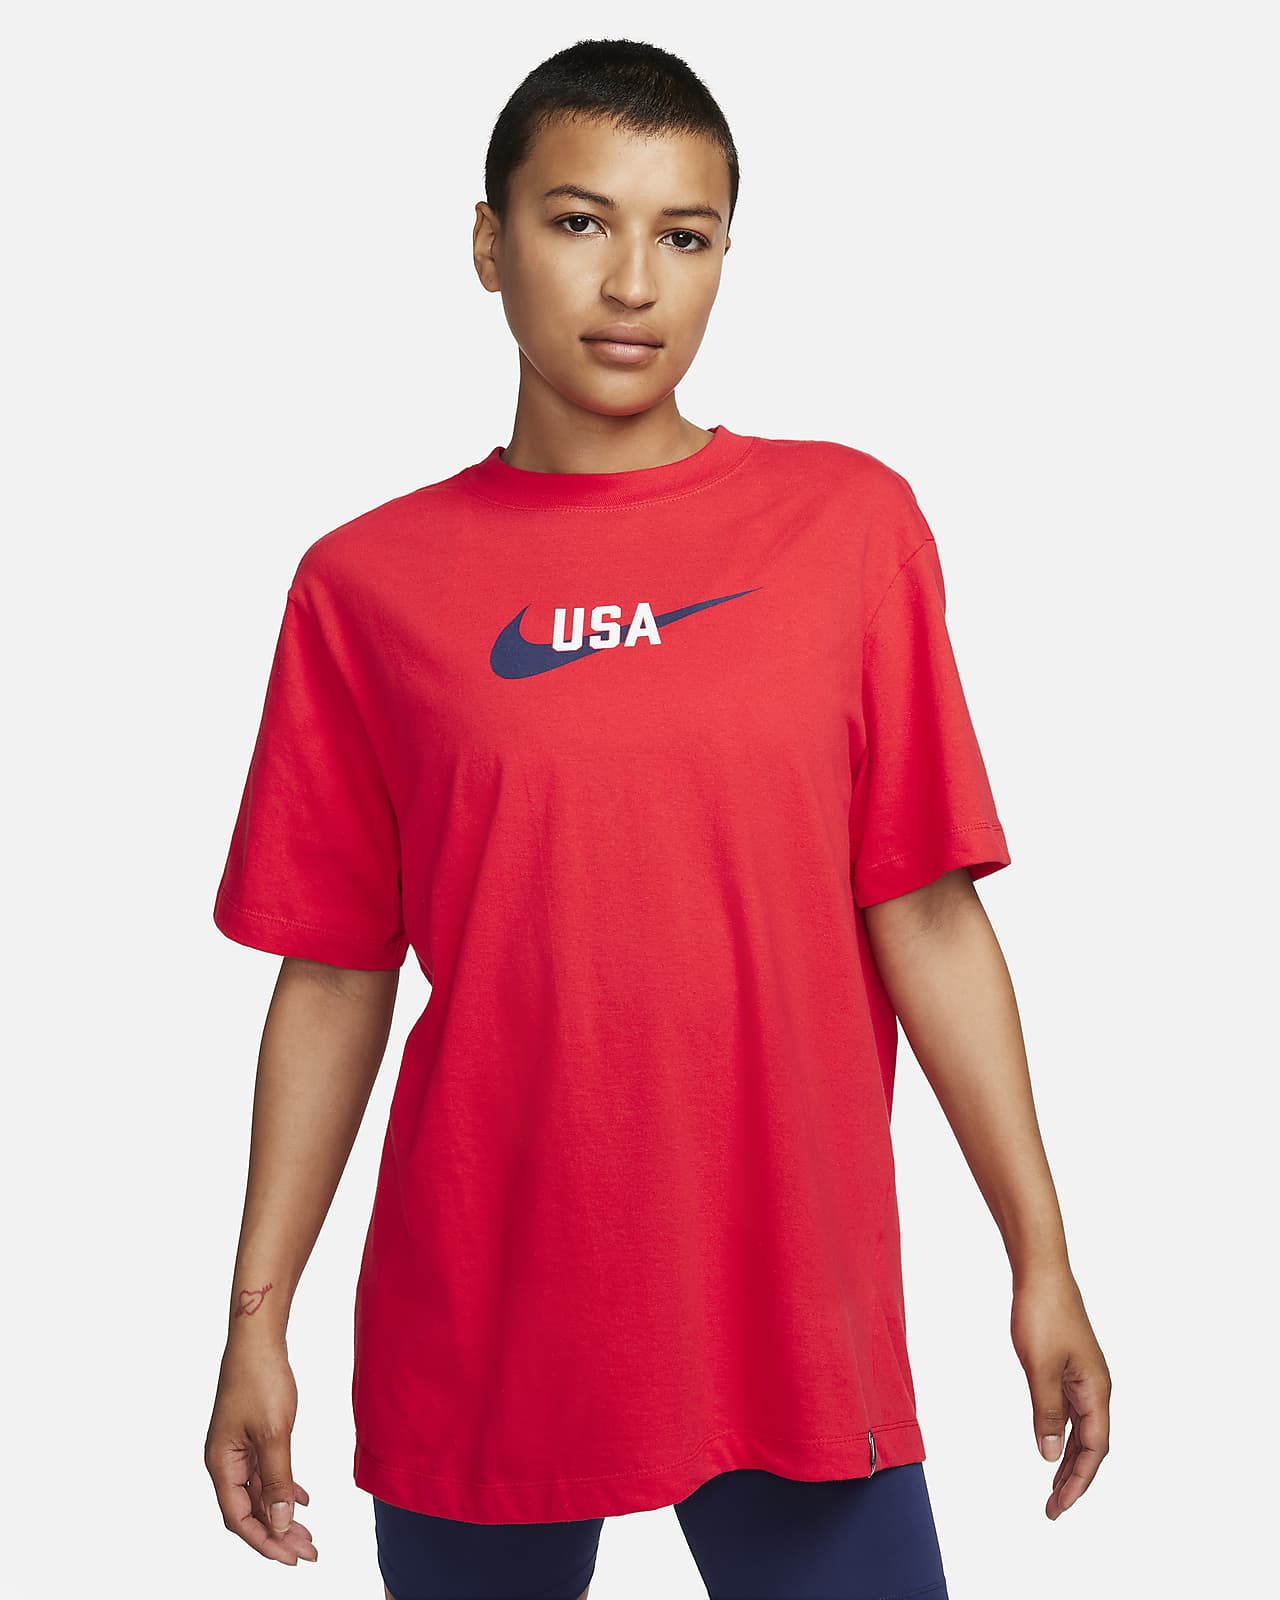 U.S. Swoosh Women's Nike T-Shirt.